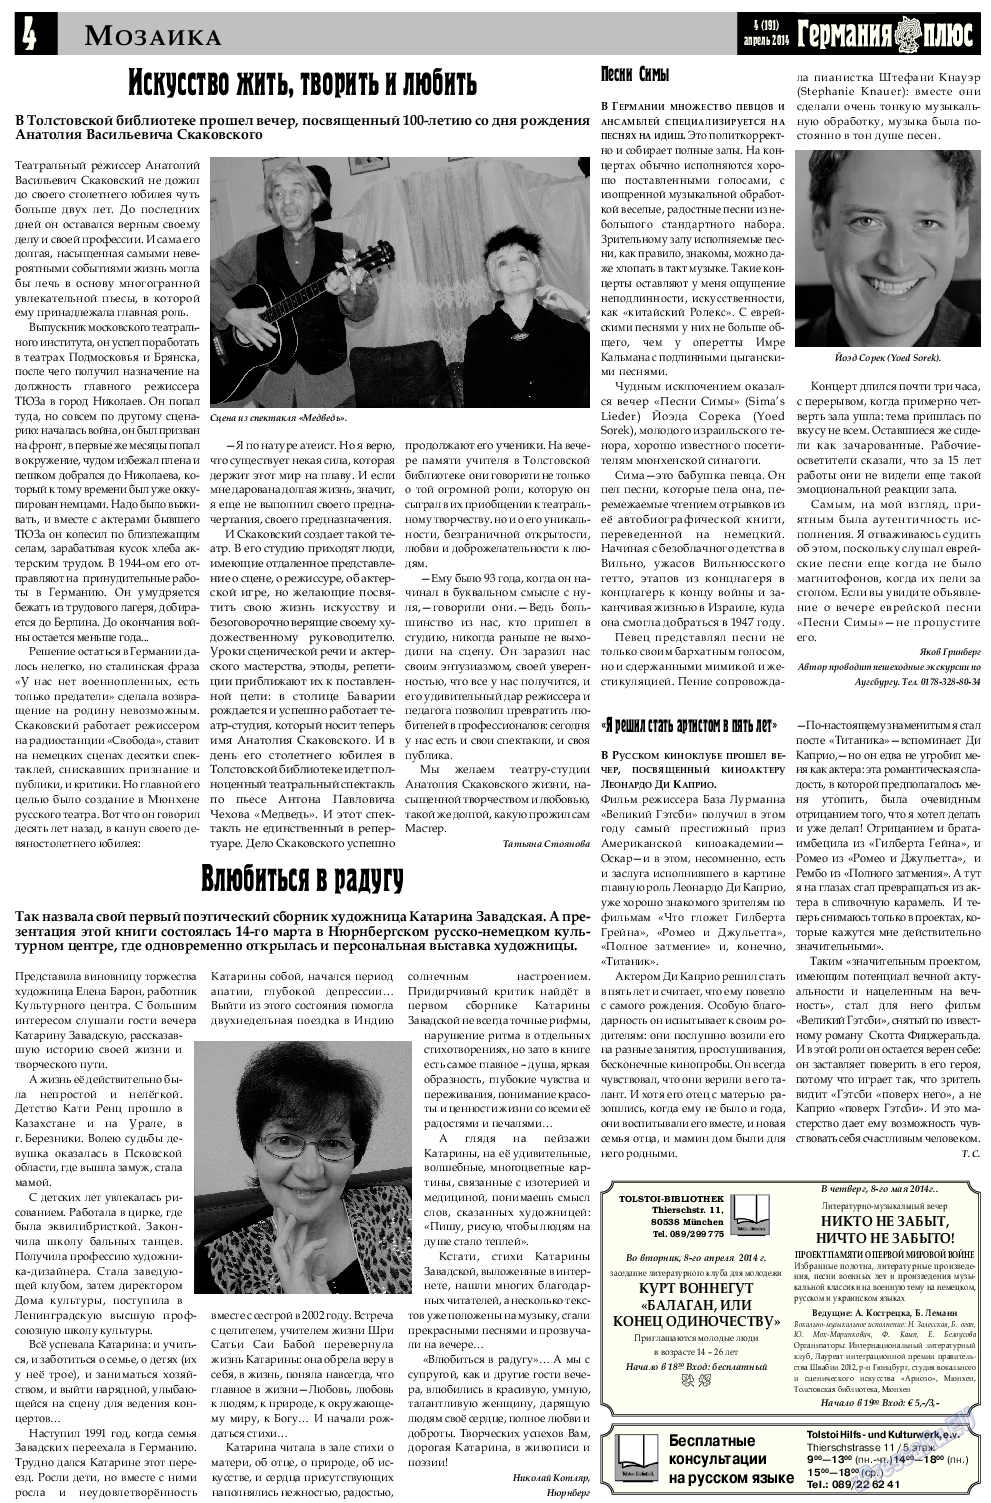 Германия плюс (газета). 2014 год, номер 4, стр. 4